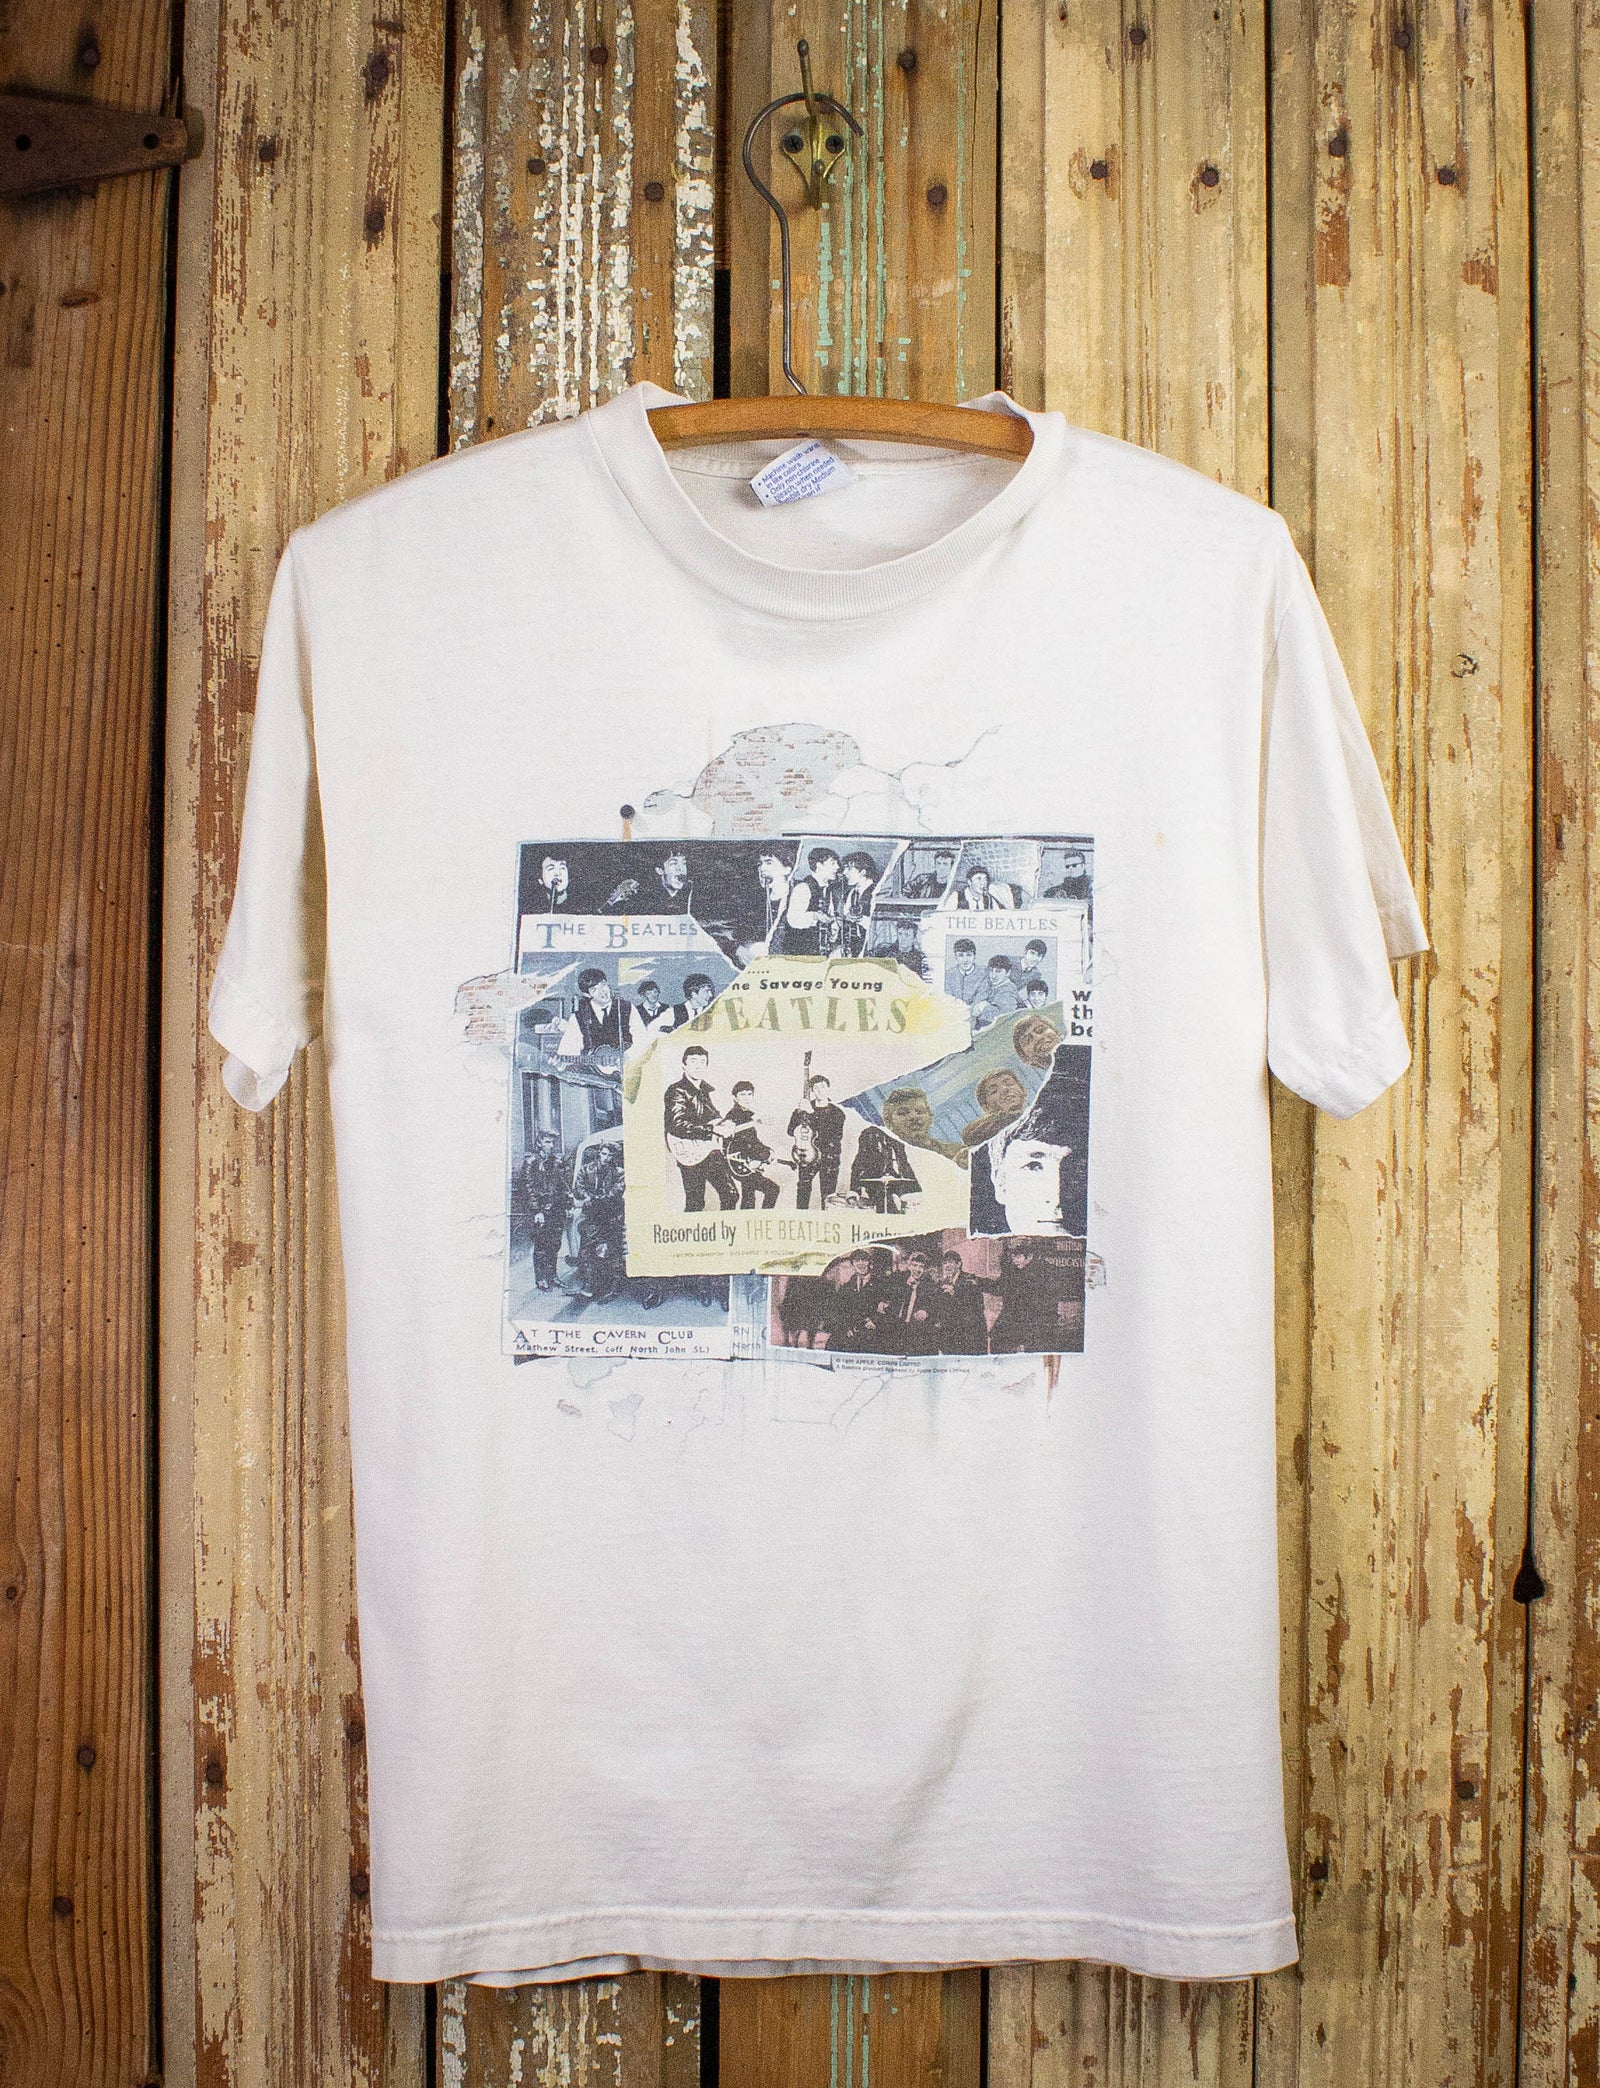 Vintage Beatles Anthology 1 Promo T Shirt 1995 White Medium